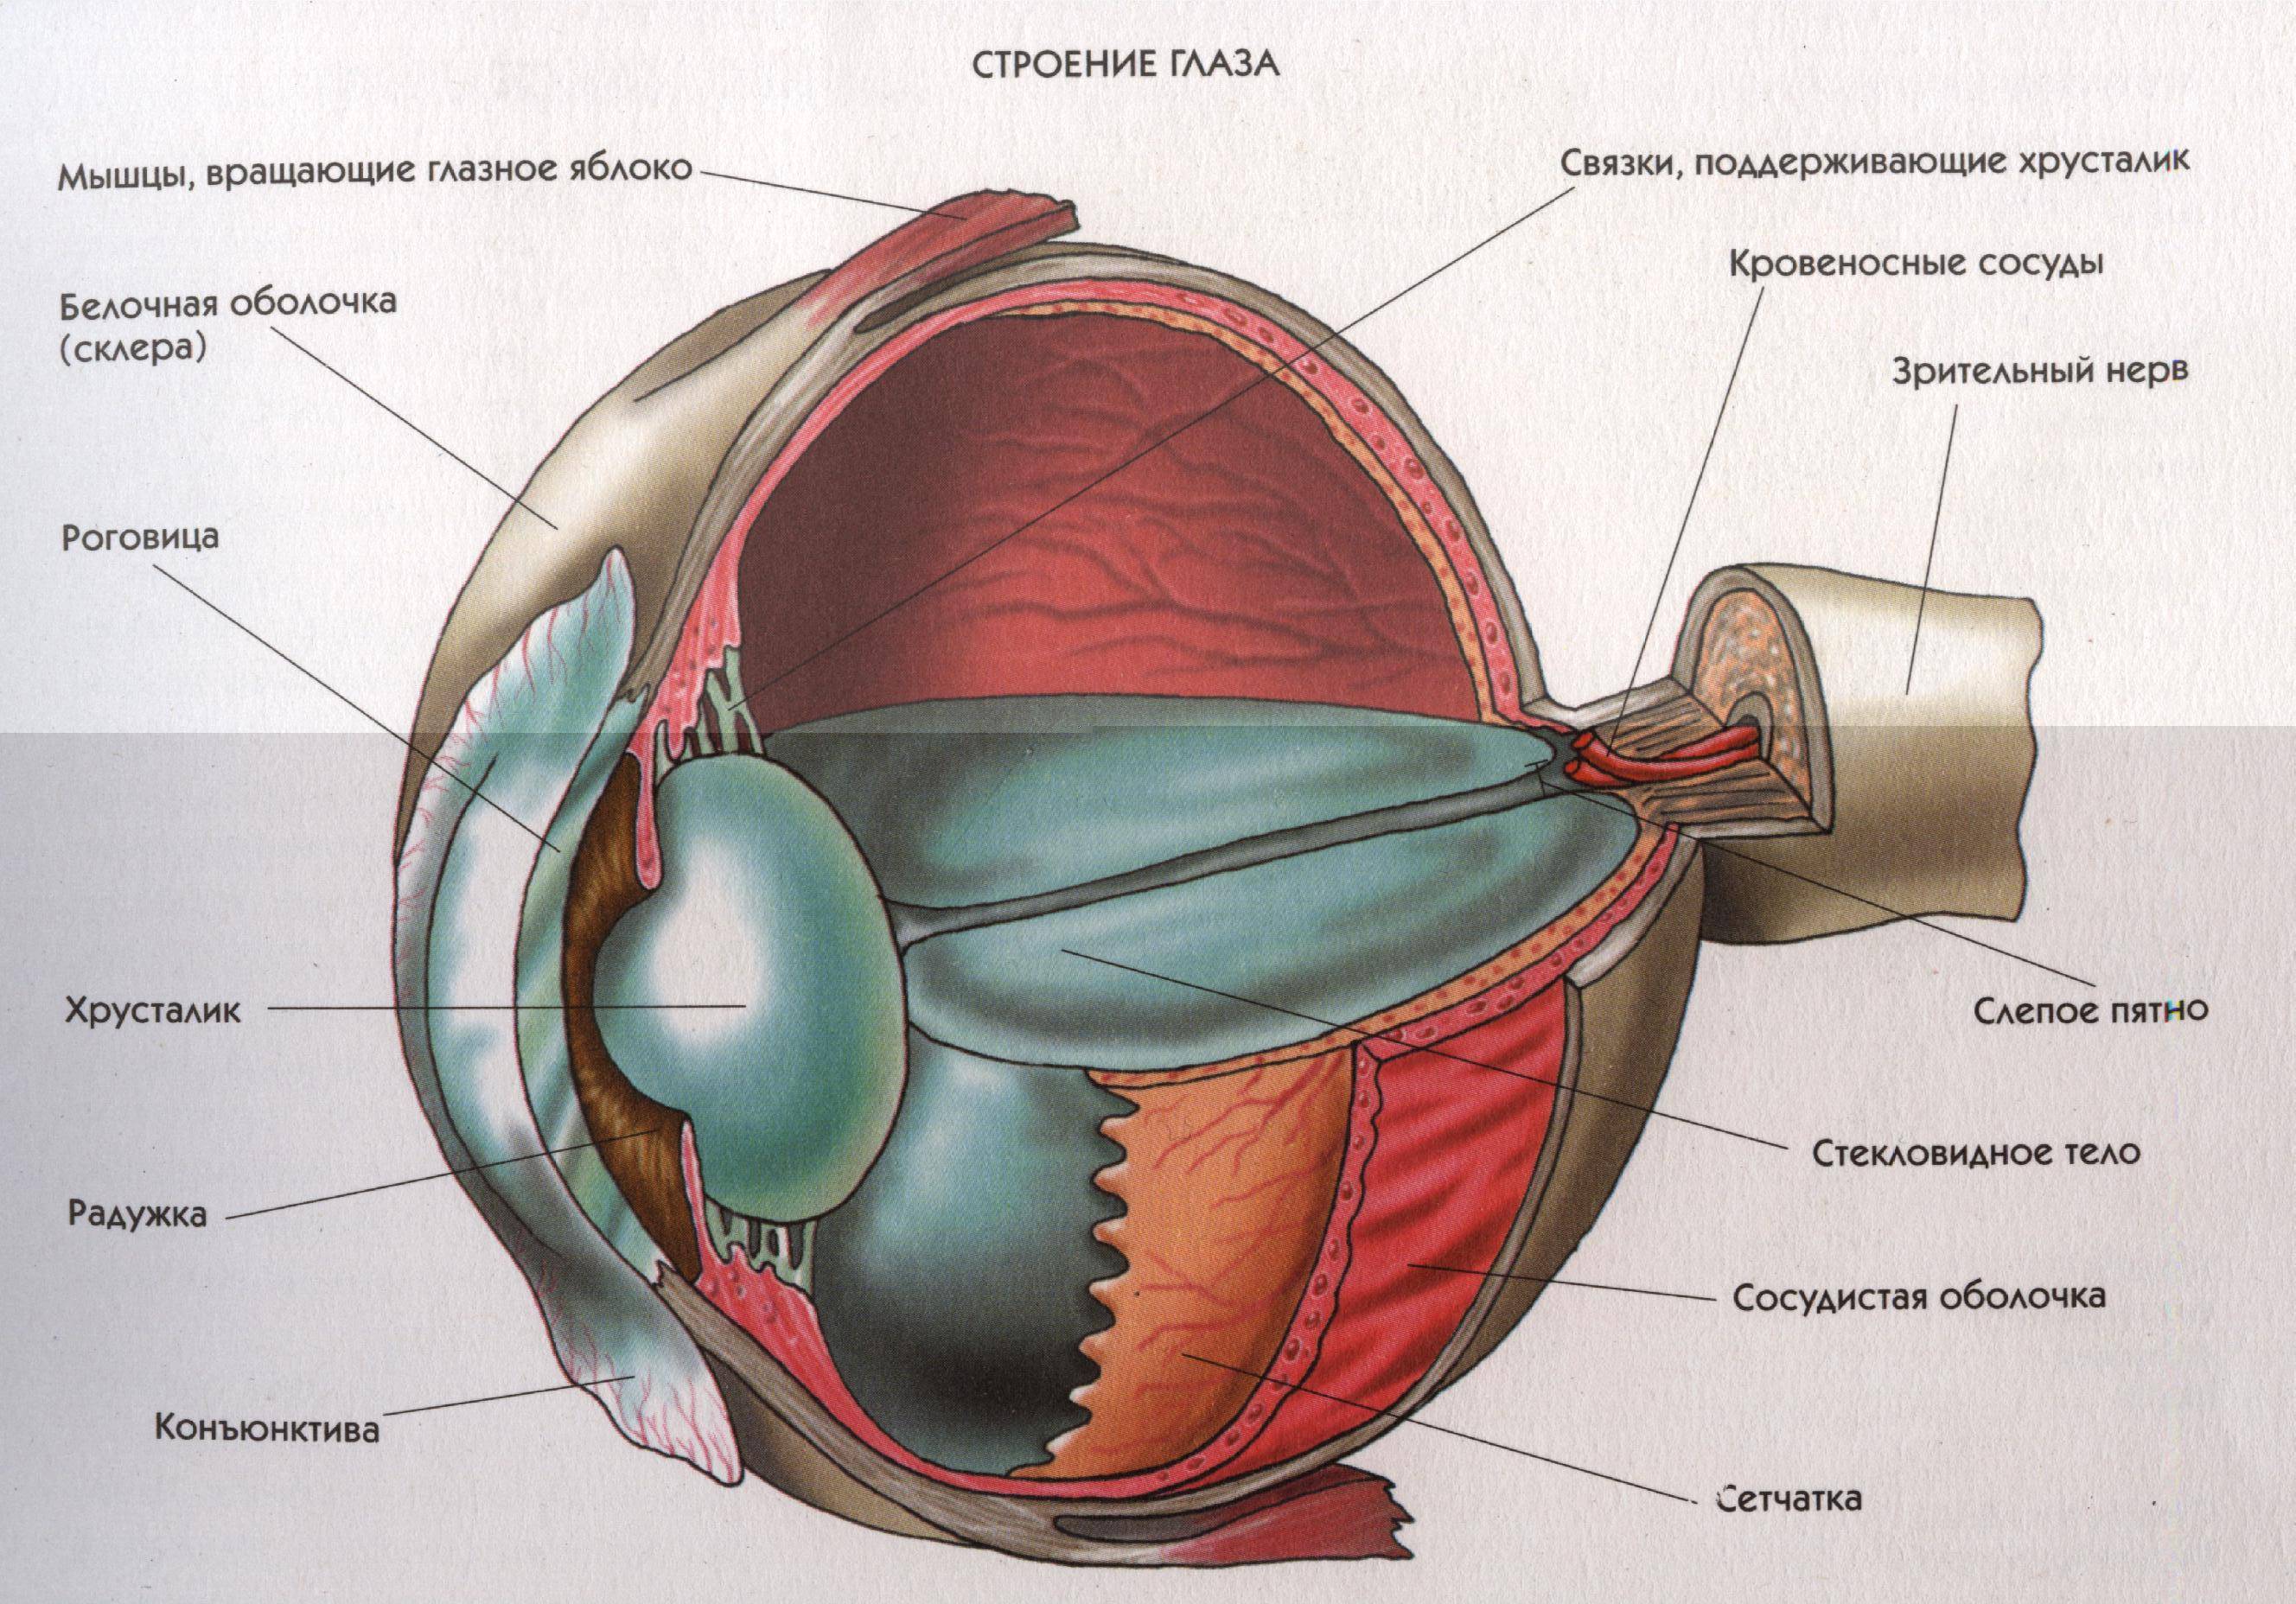 Строение глаза человека - анатомия, рисунки, фото